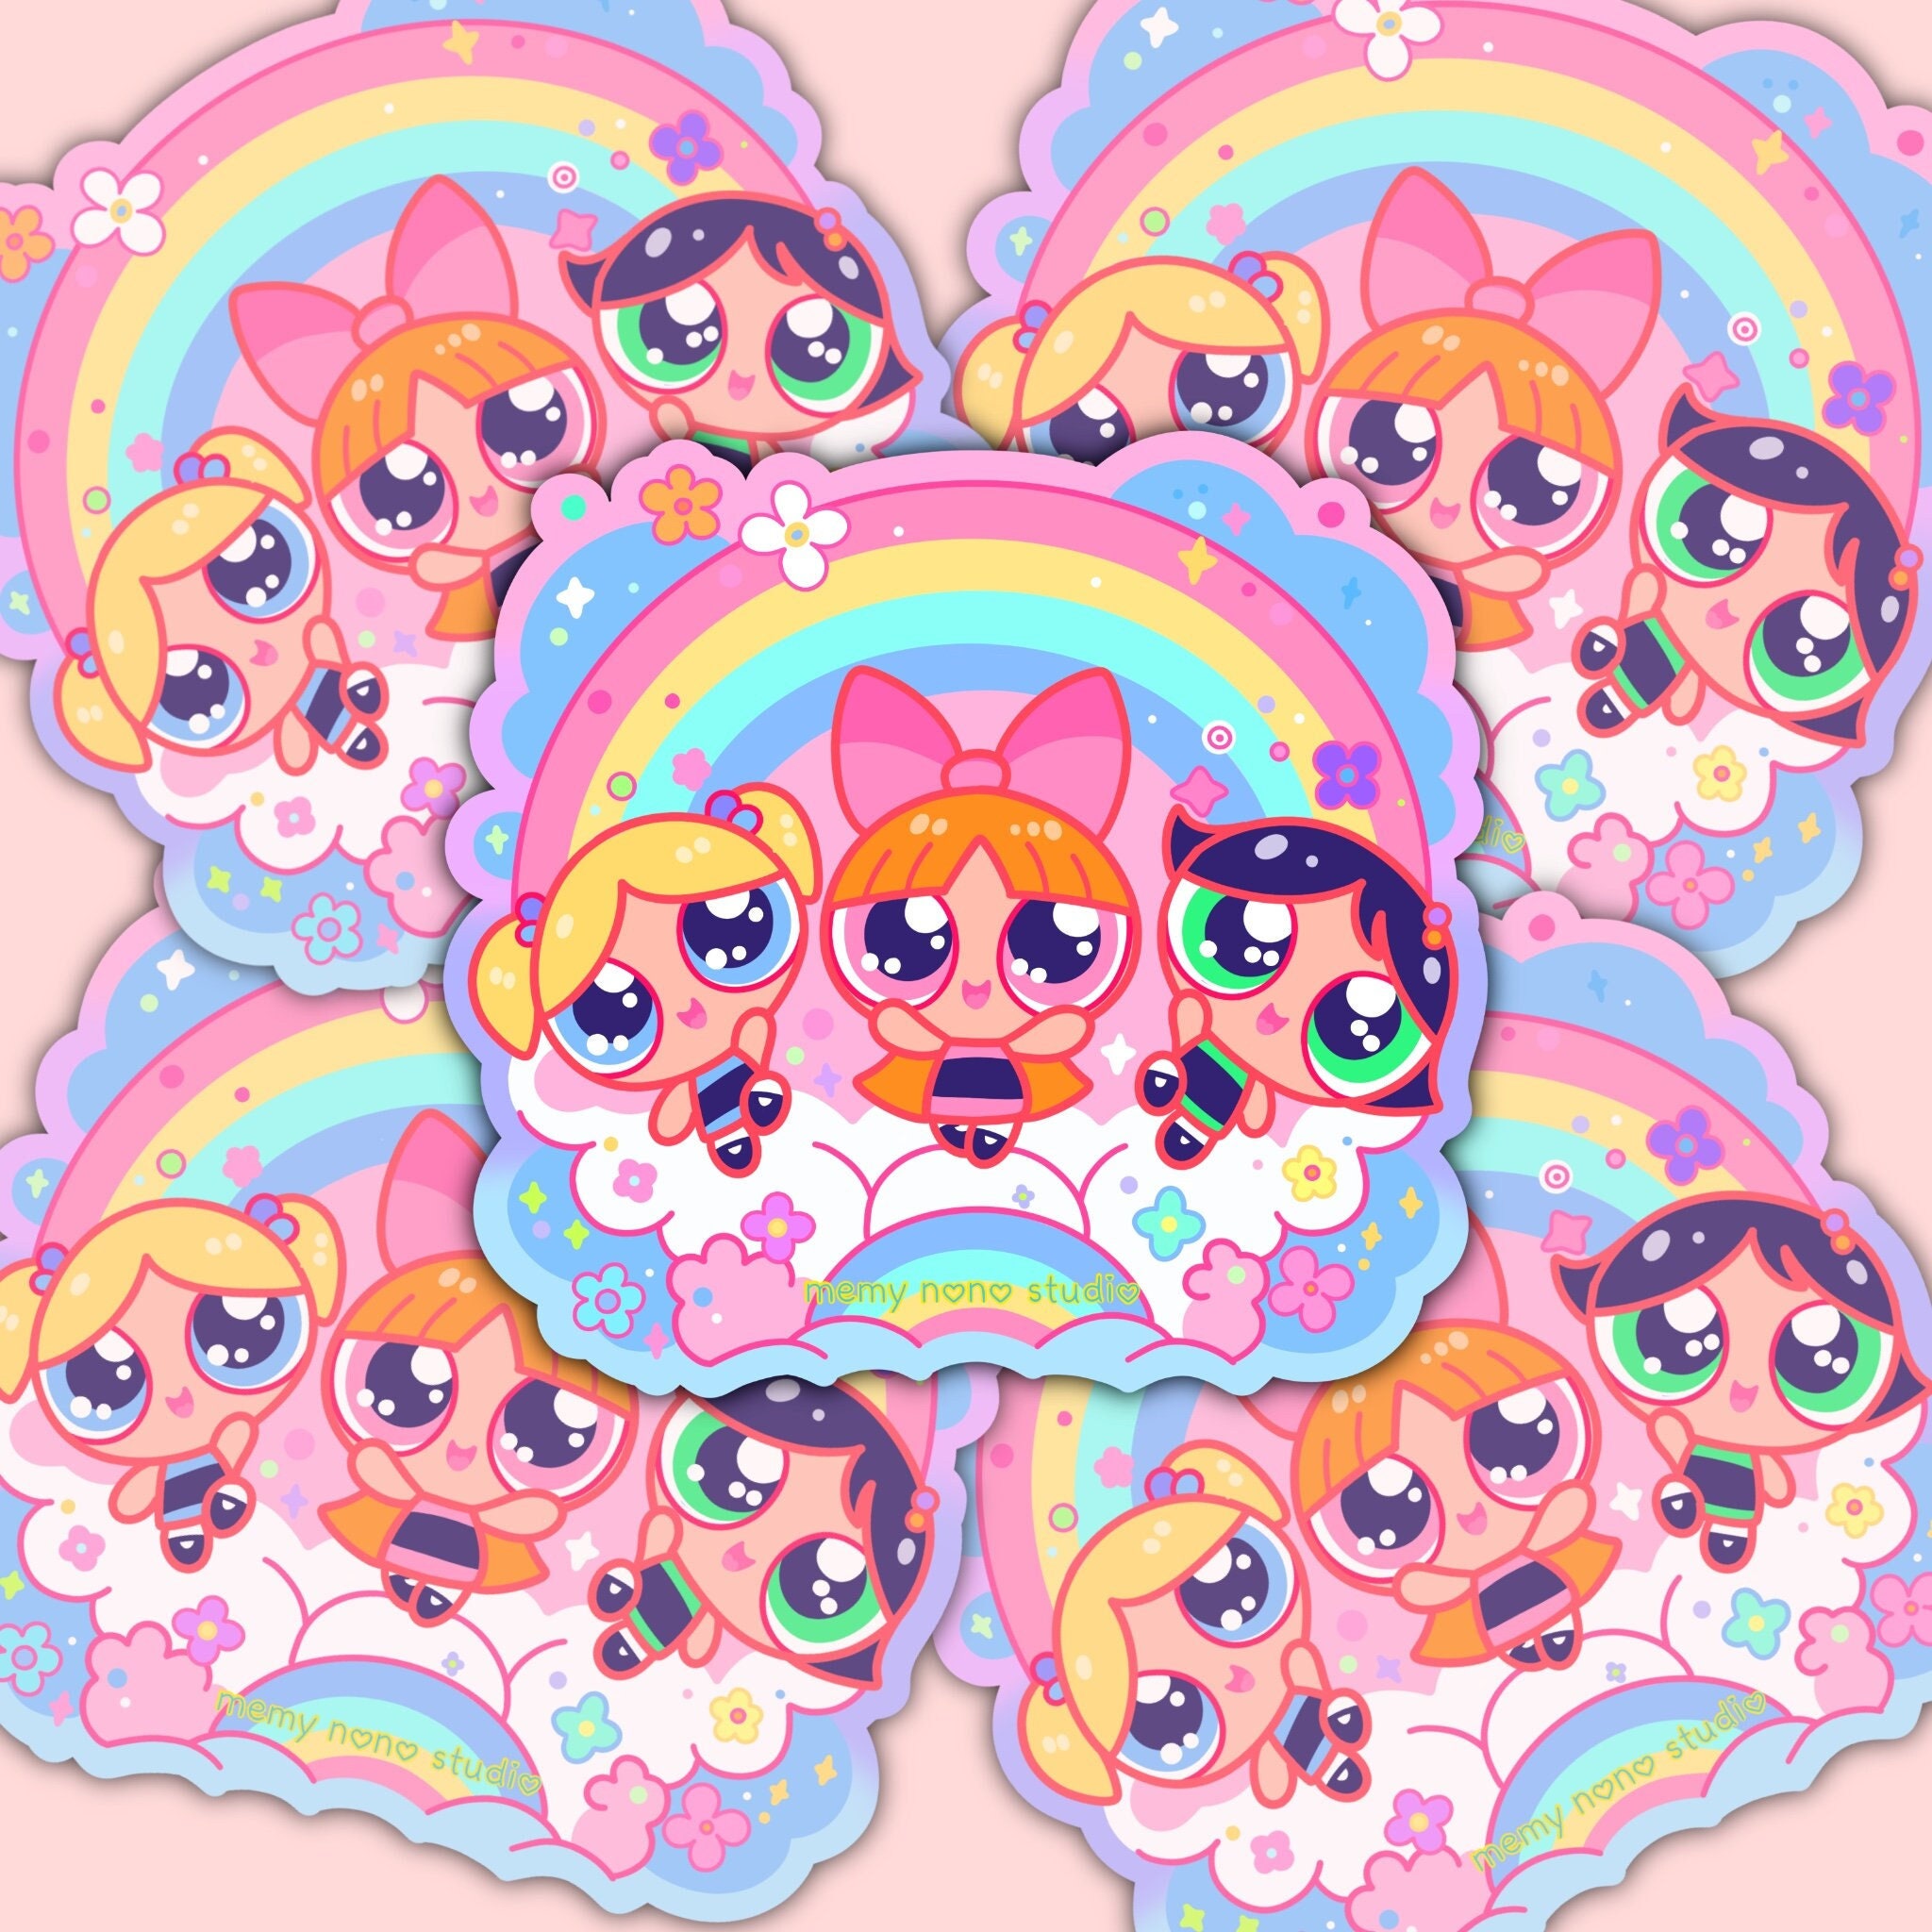 The Powerpuff Girls Baby Powerpuff Girls Kawaii Stickers Cartoon ...